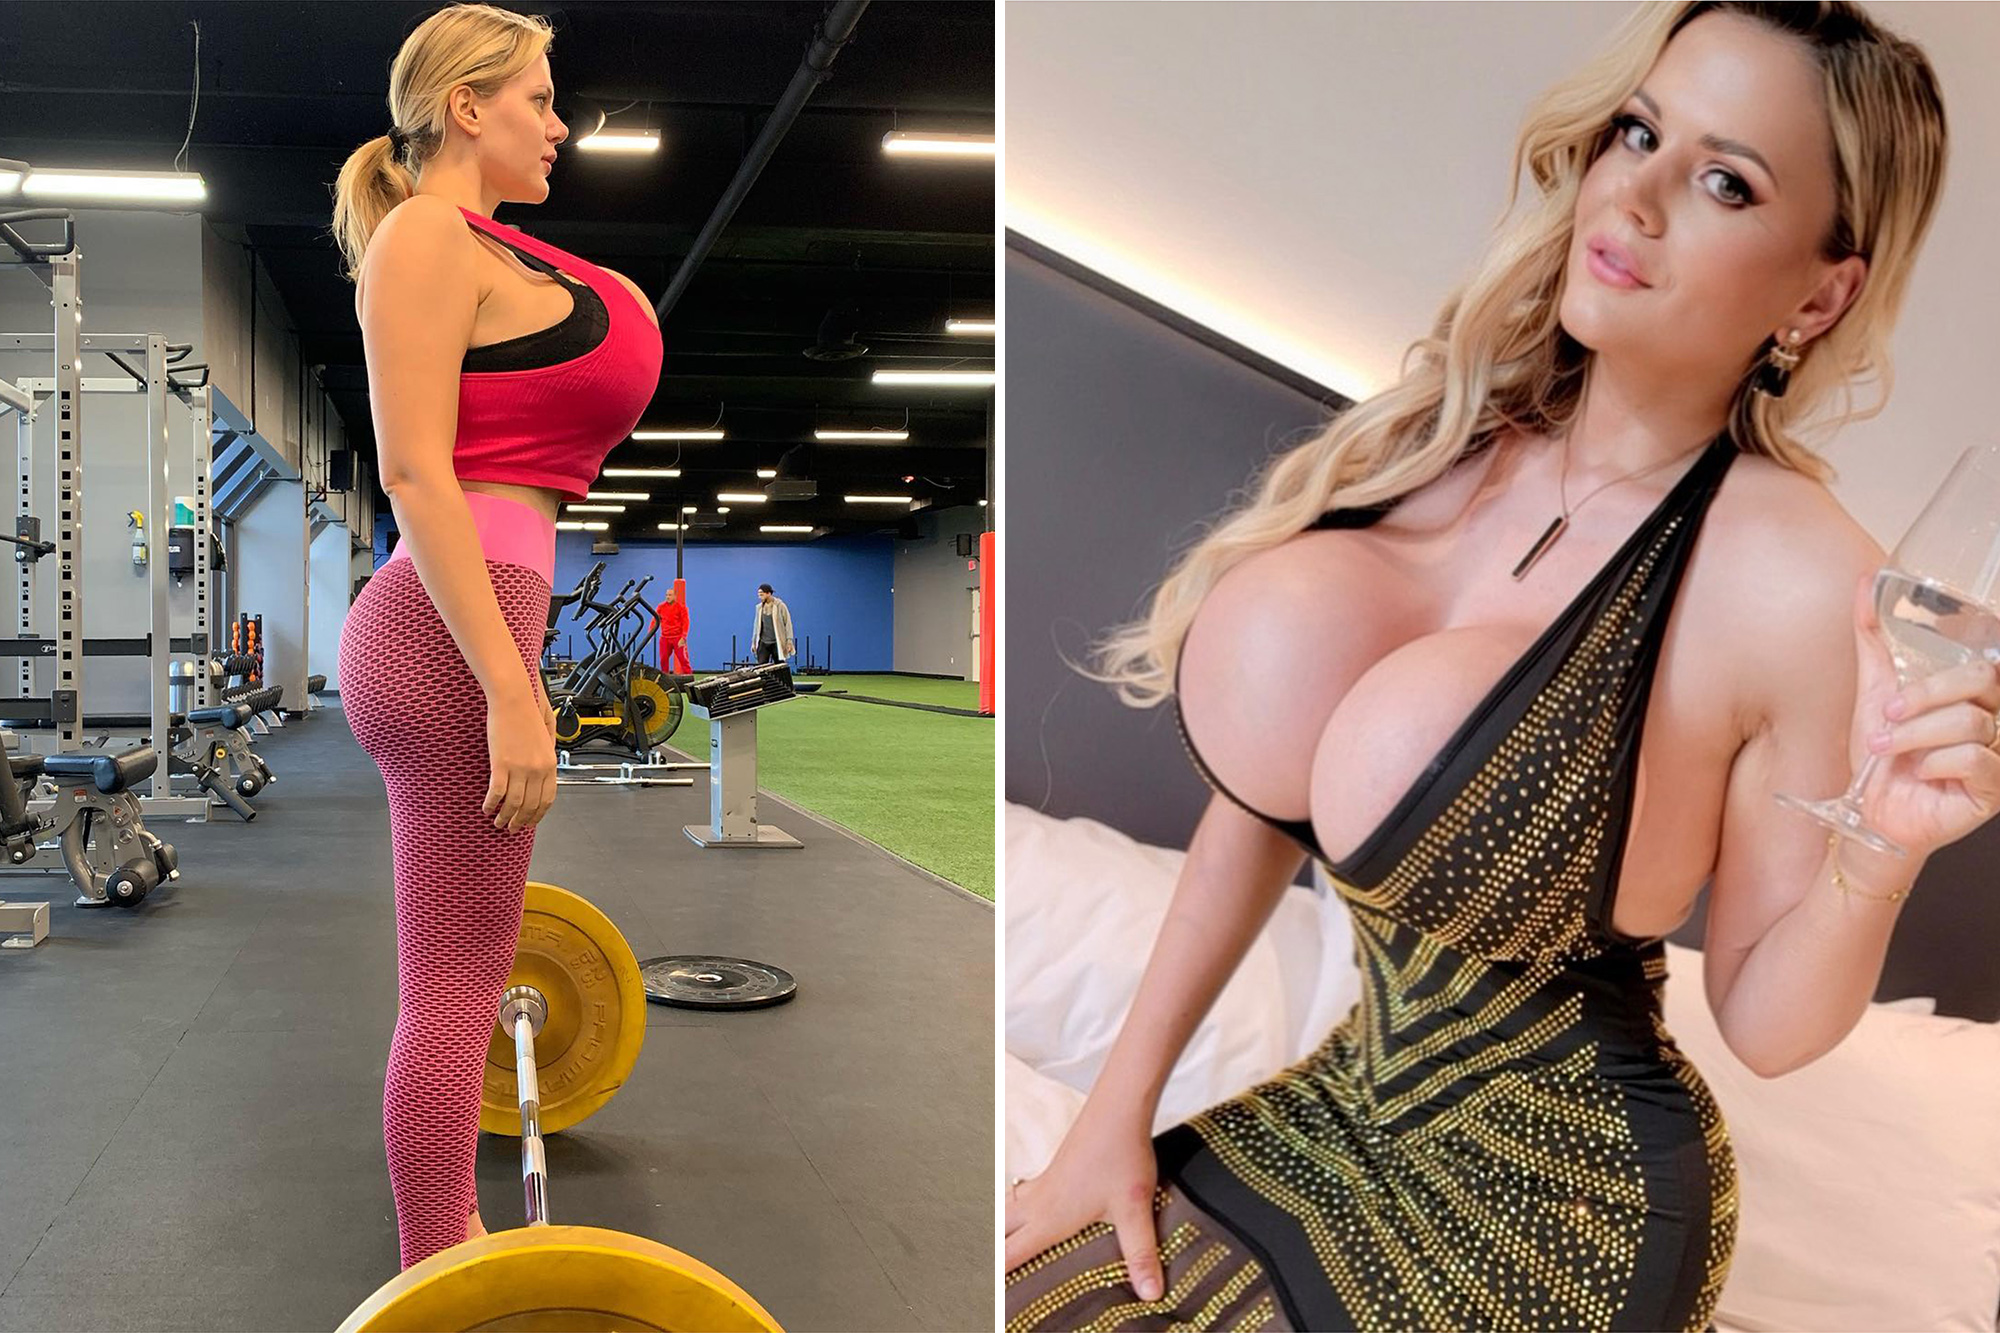 chaminda jayamaha recommends big boobs fit body pic